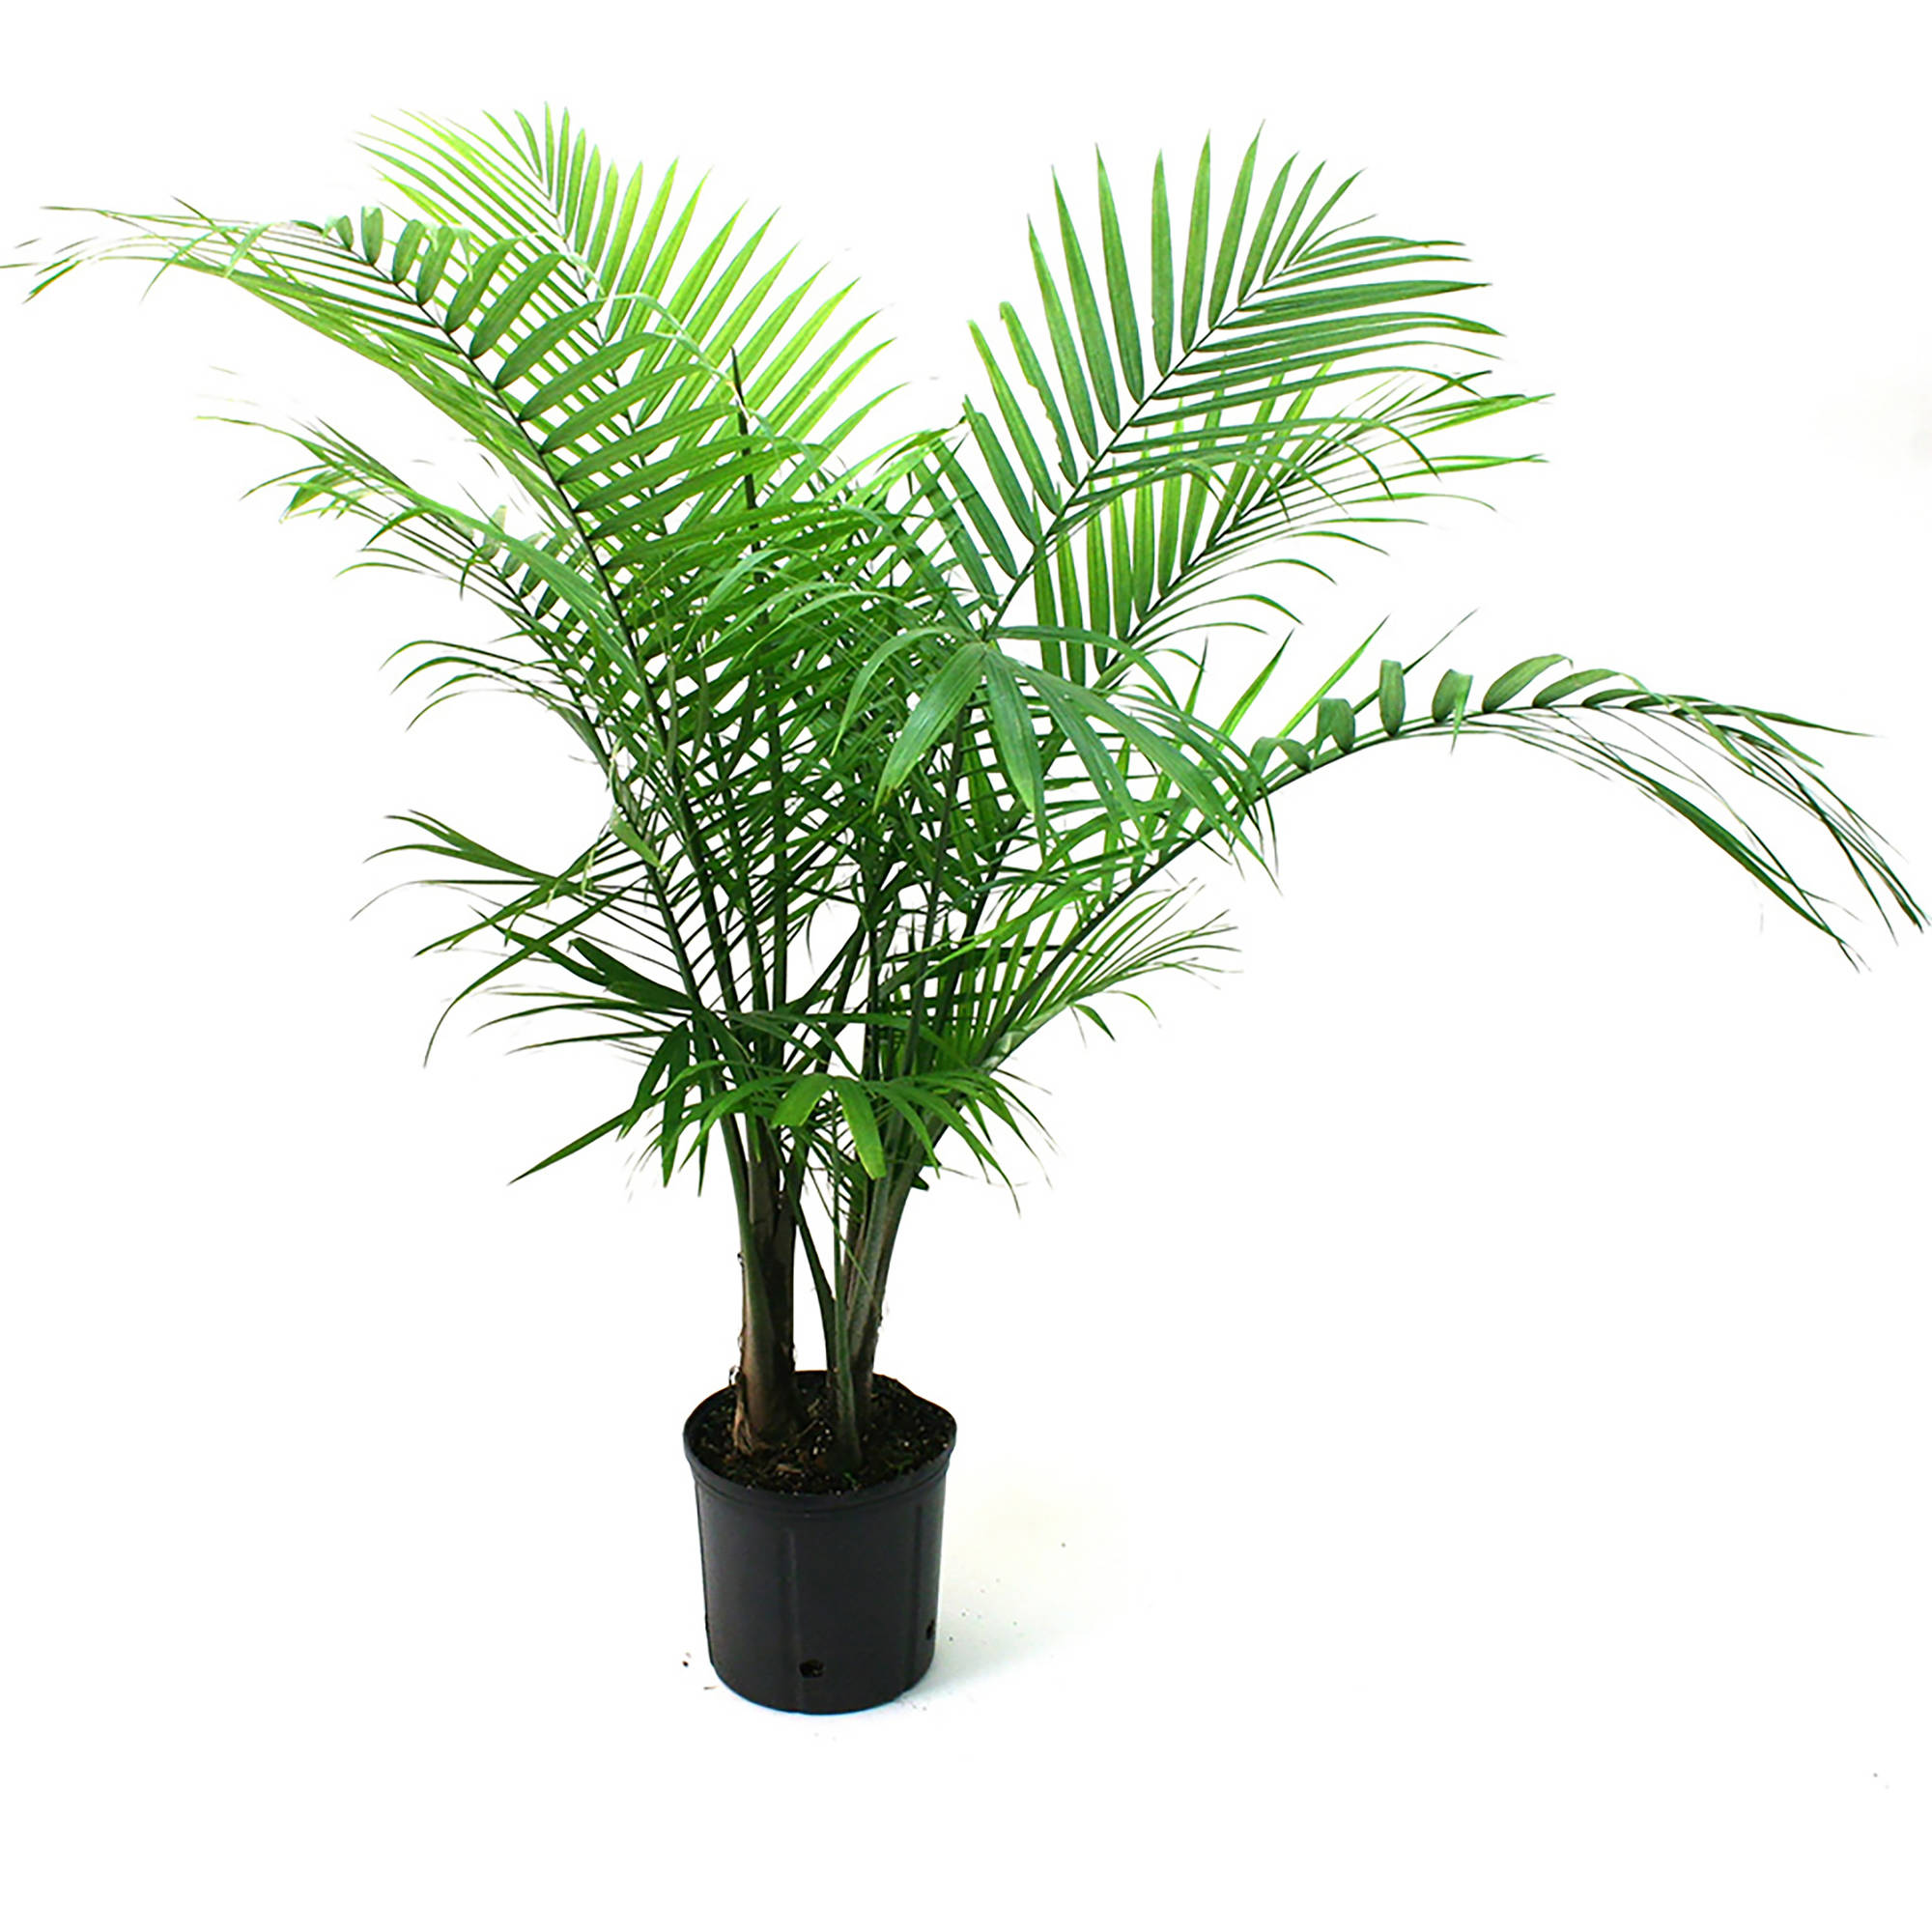 Palm bush photo